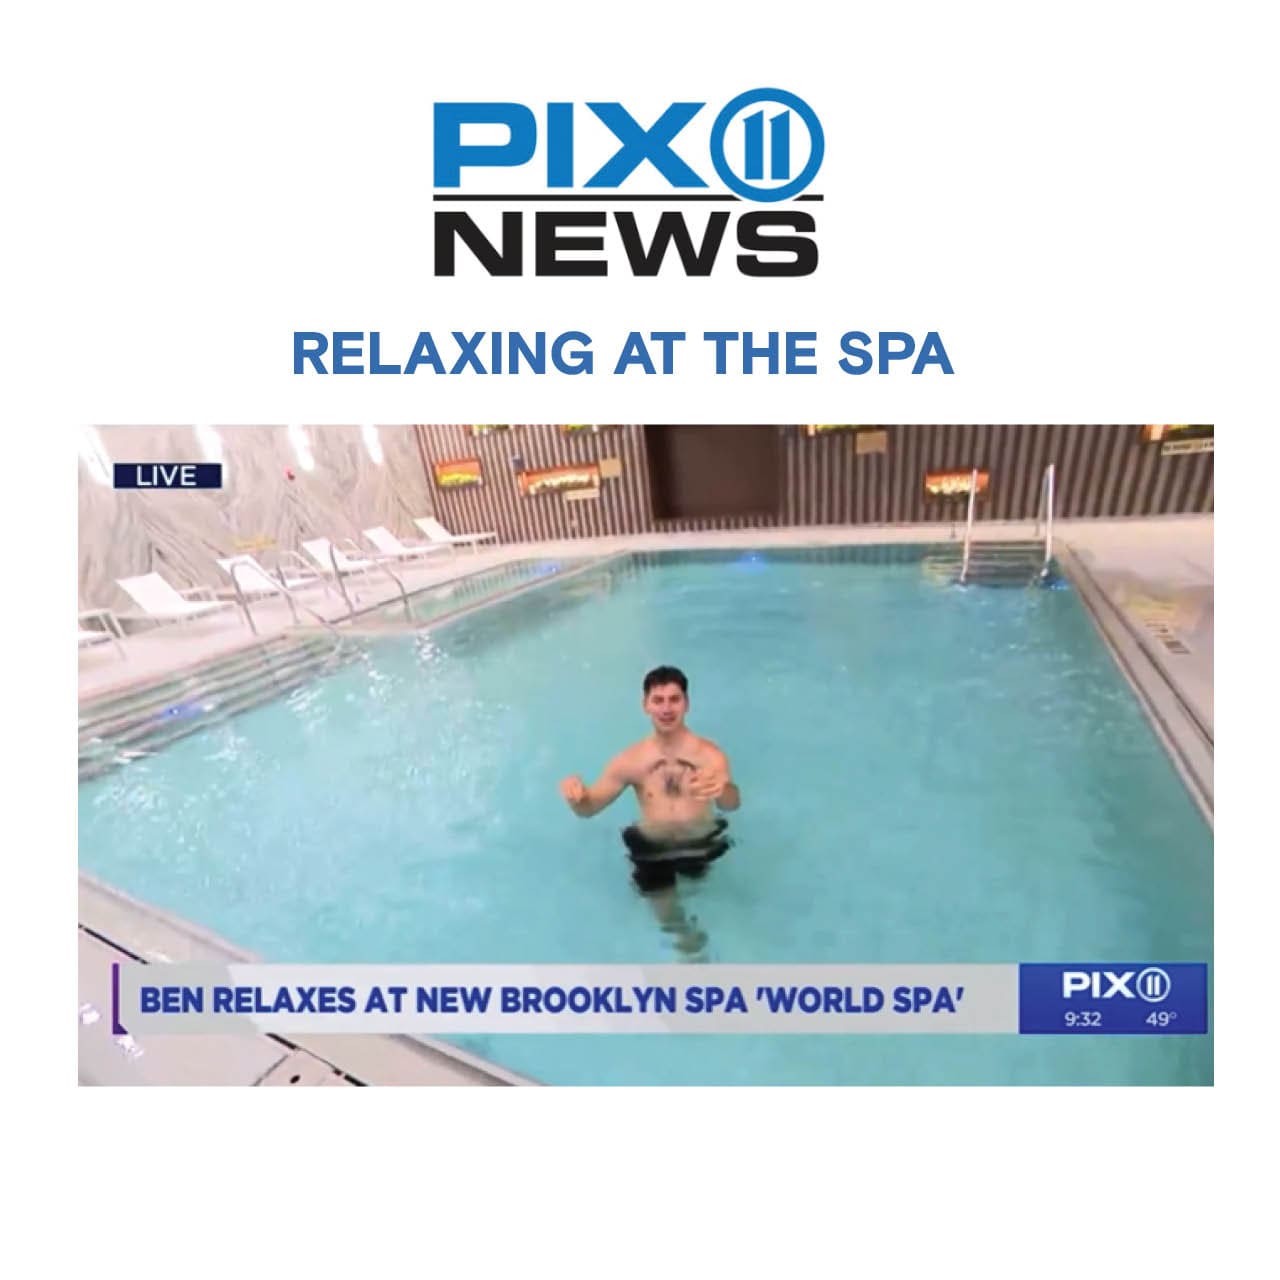 a pix 11 news featuring World Spa.